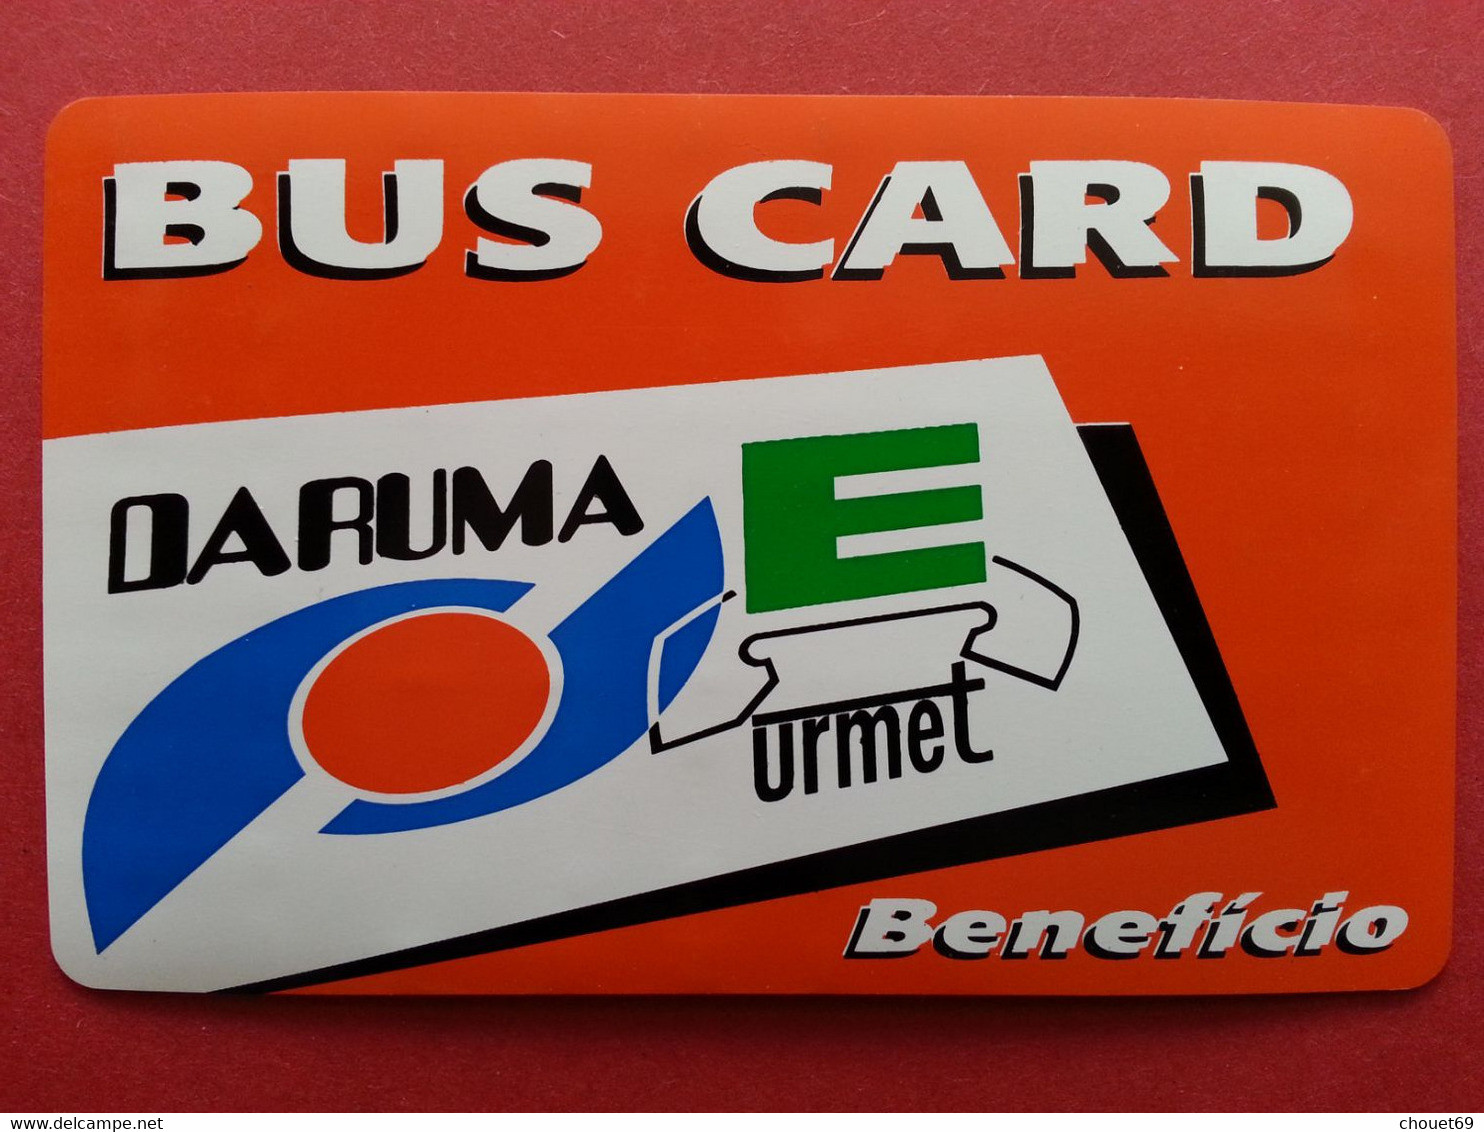 BUS CARD ORANGE Daruma URMET 10u Telephone Test Inductive Mint Unused Neuve (BA1019 - Tests & Servicios